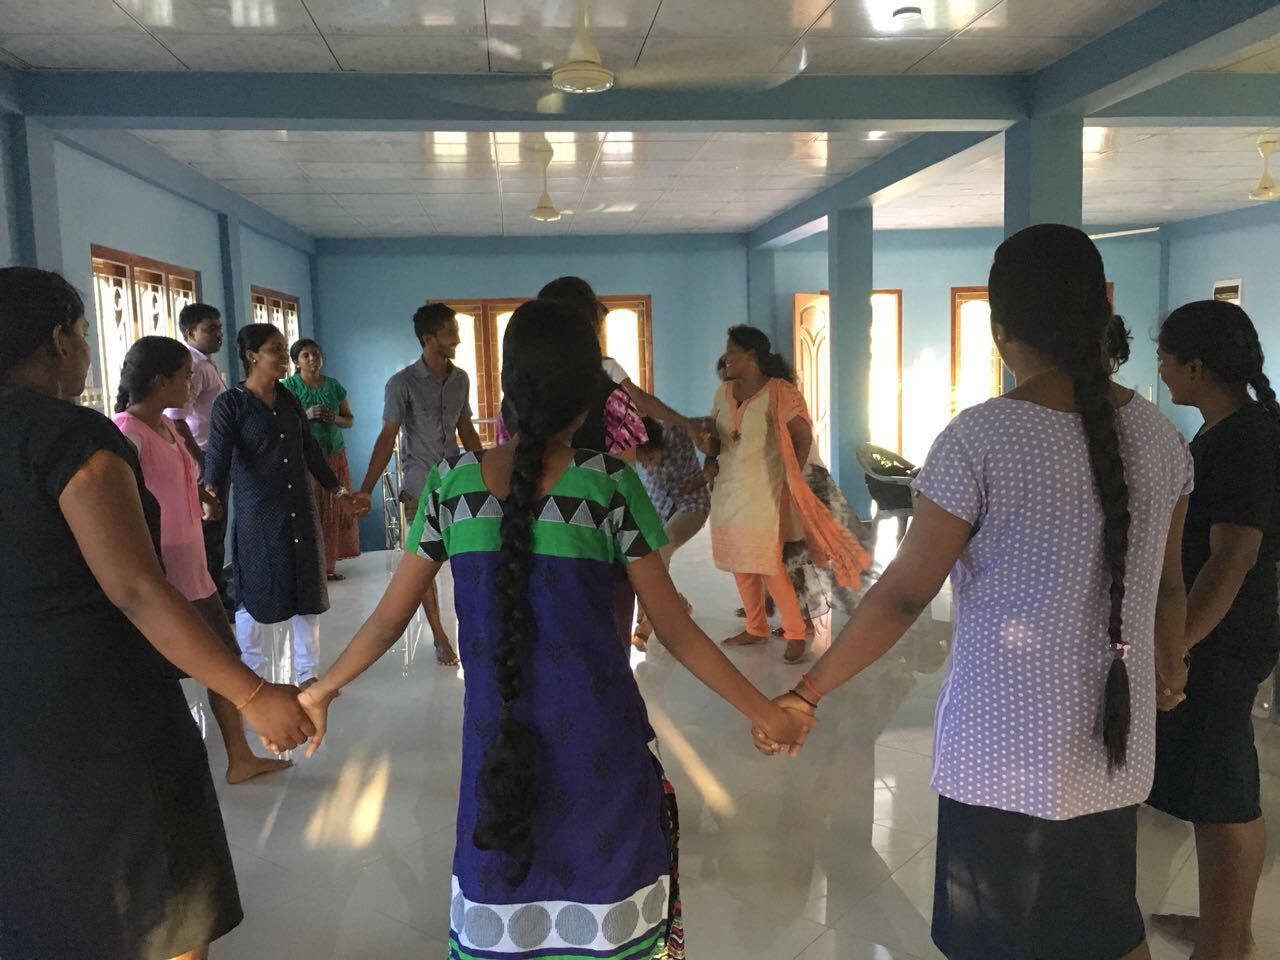 jaffna Saraswathi community center